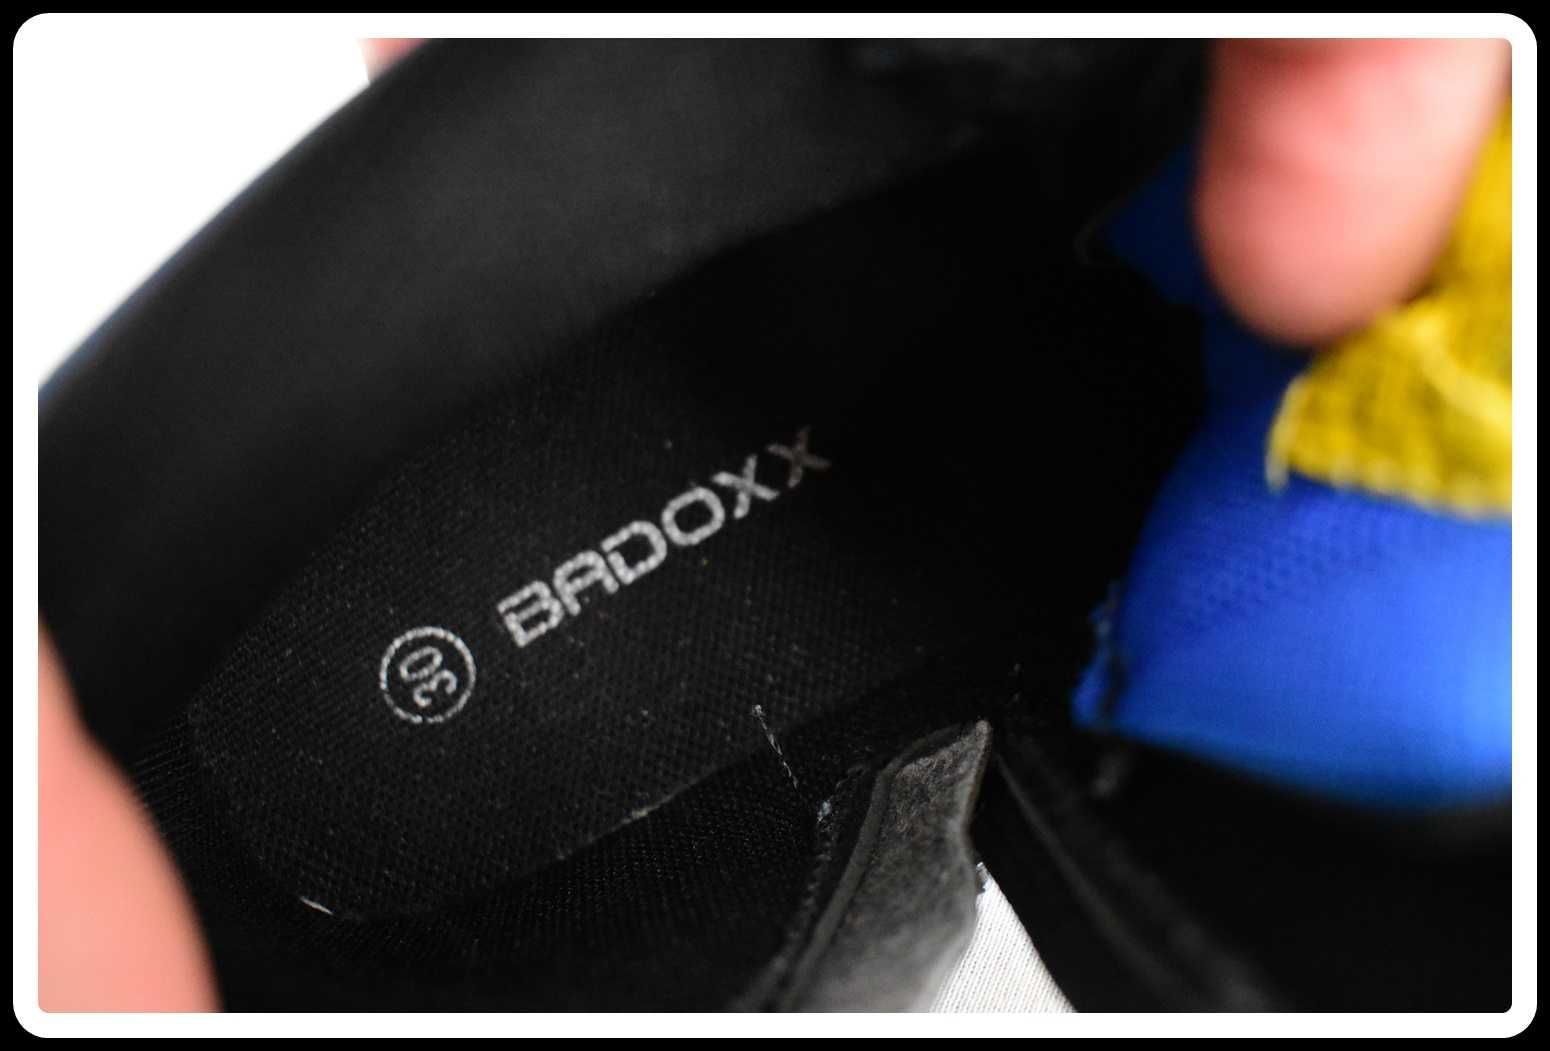 BADOXX Buty chłopięce półbuty rozmiar 30 wkładka ok 19 cm